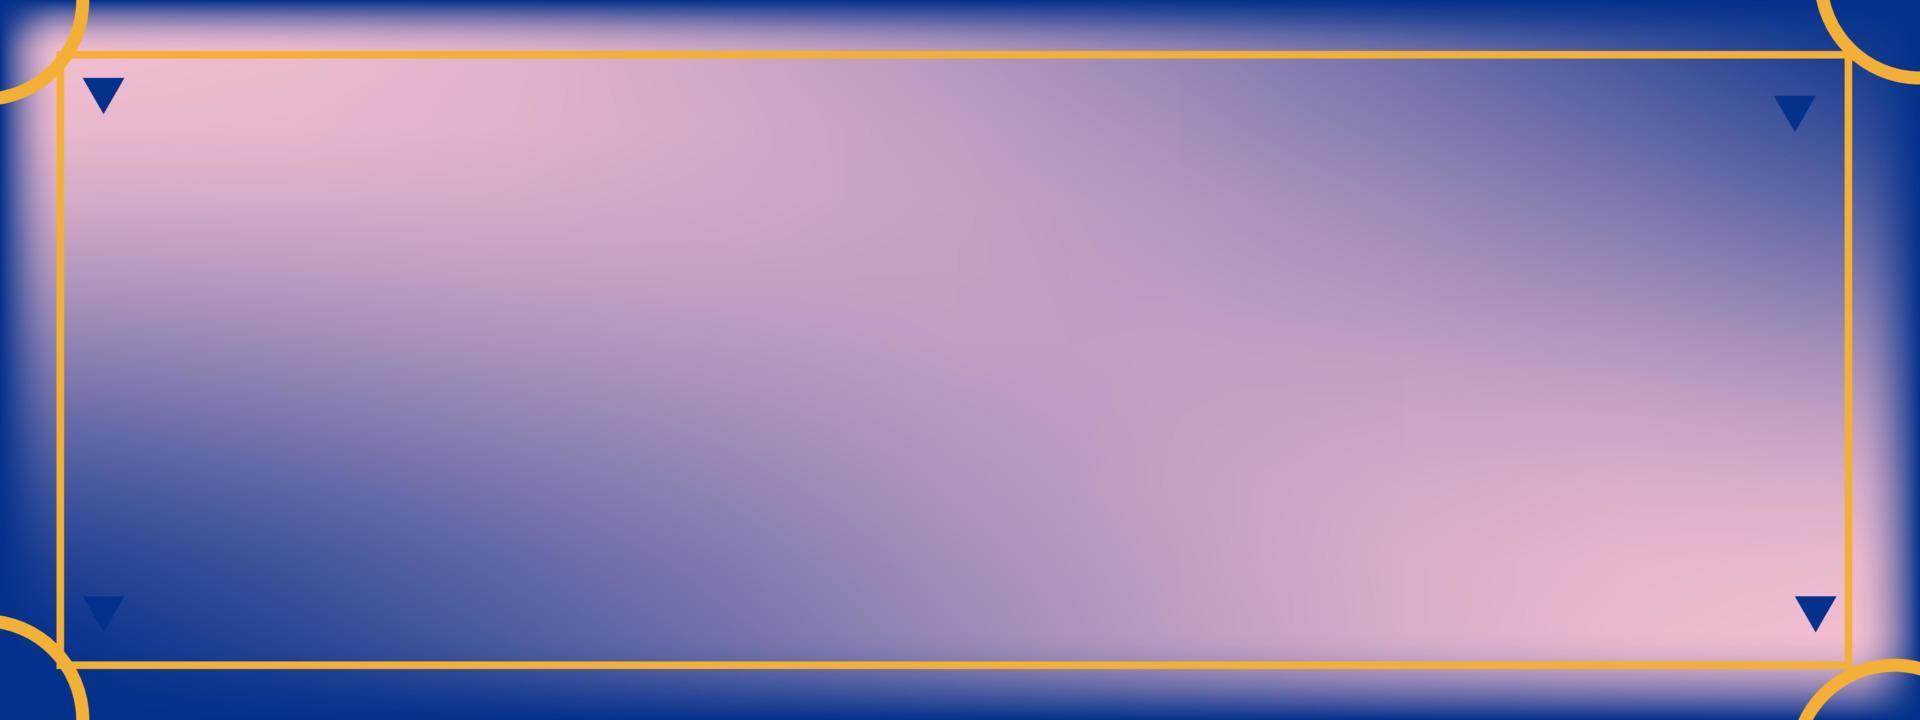 sfondo blu con gradiente rosa.per illustrazione vettoriale per la progettazione grafica, banner, poster.